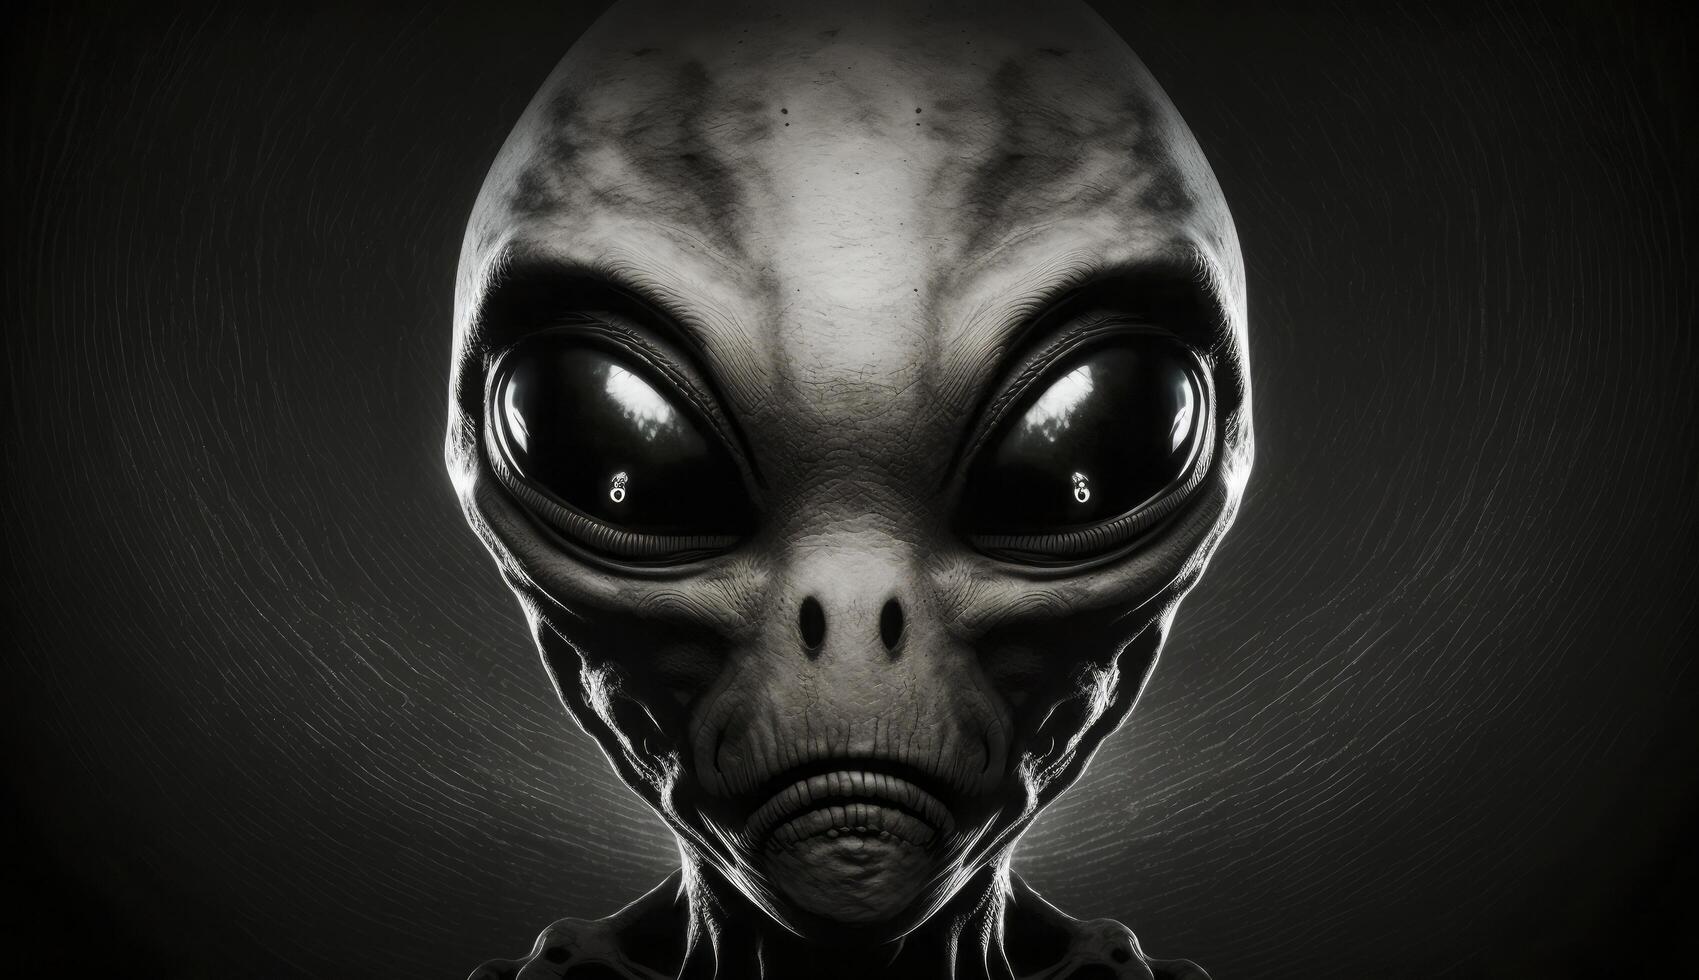 Alien humanoid portait on dark background. Invasion of extraterrestrial ...